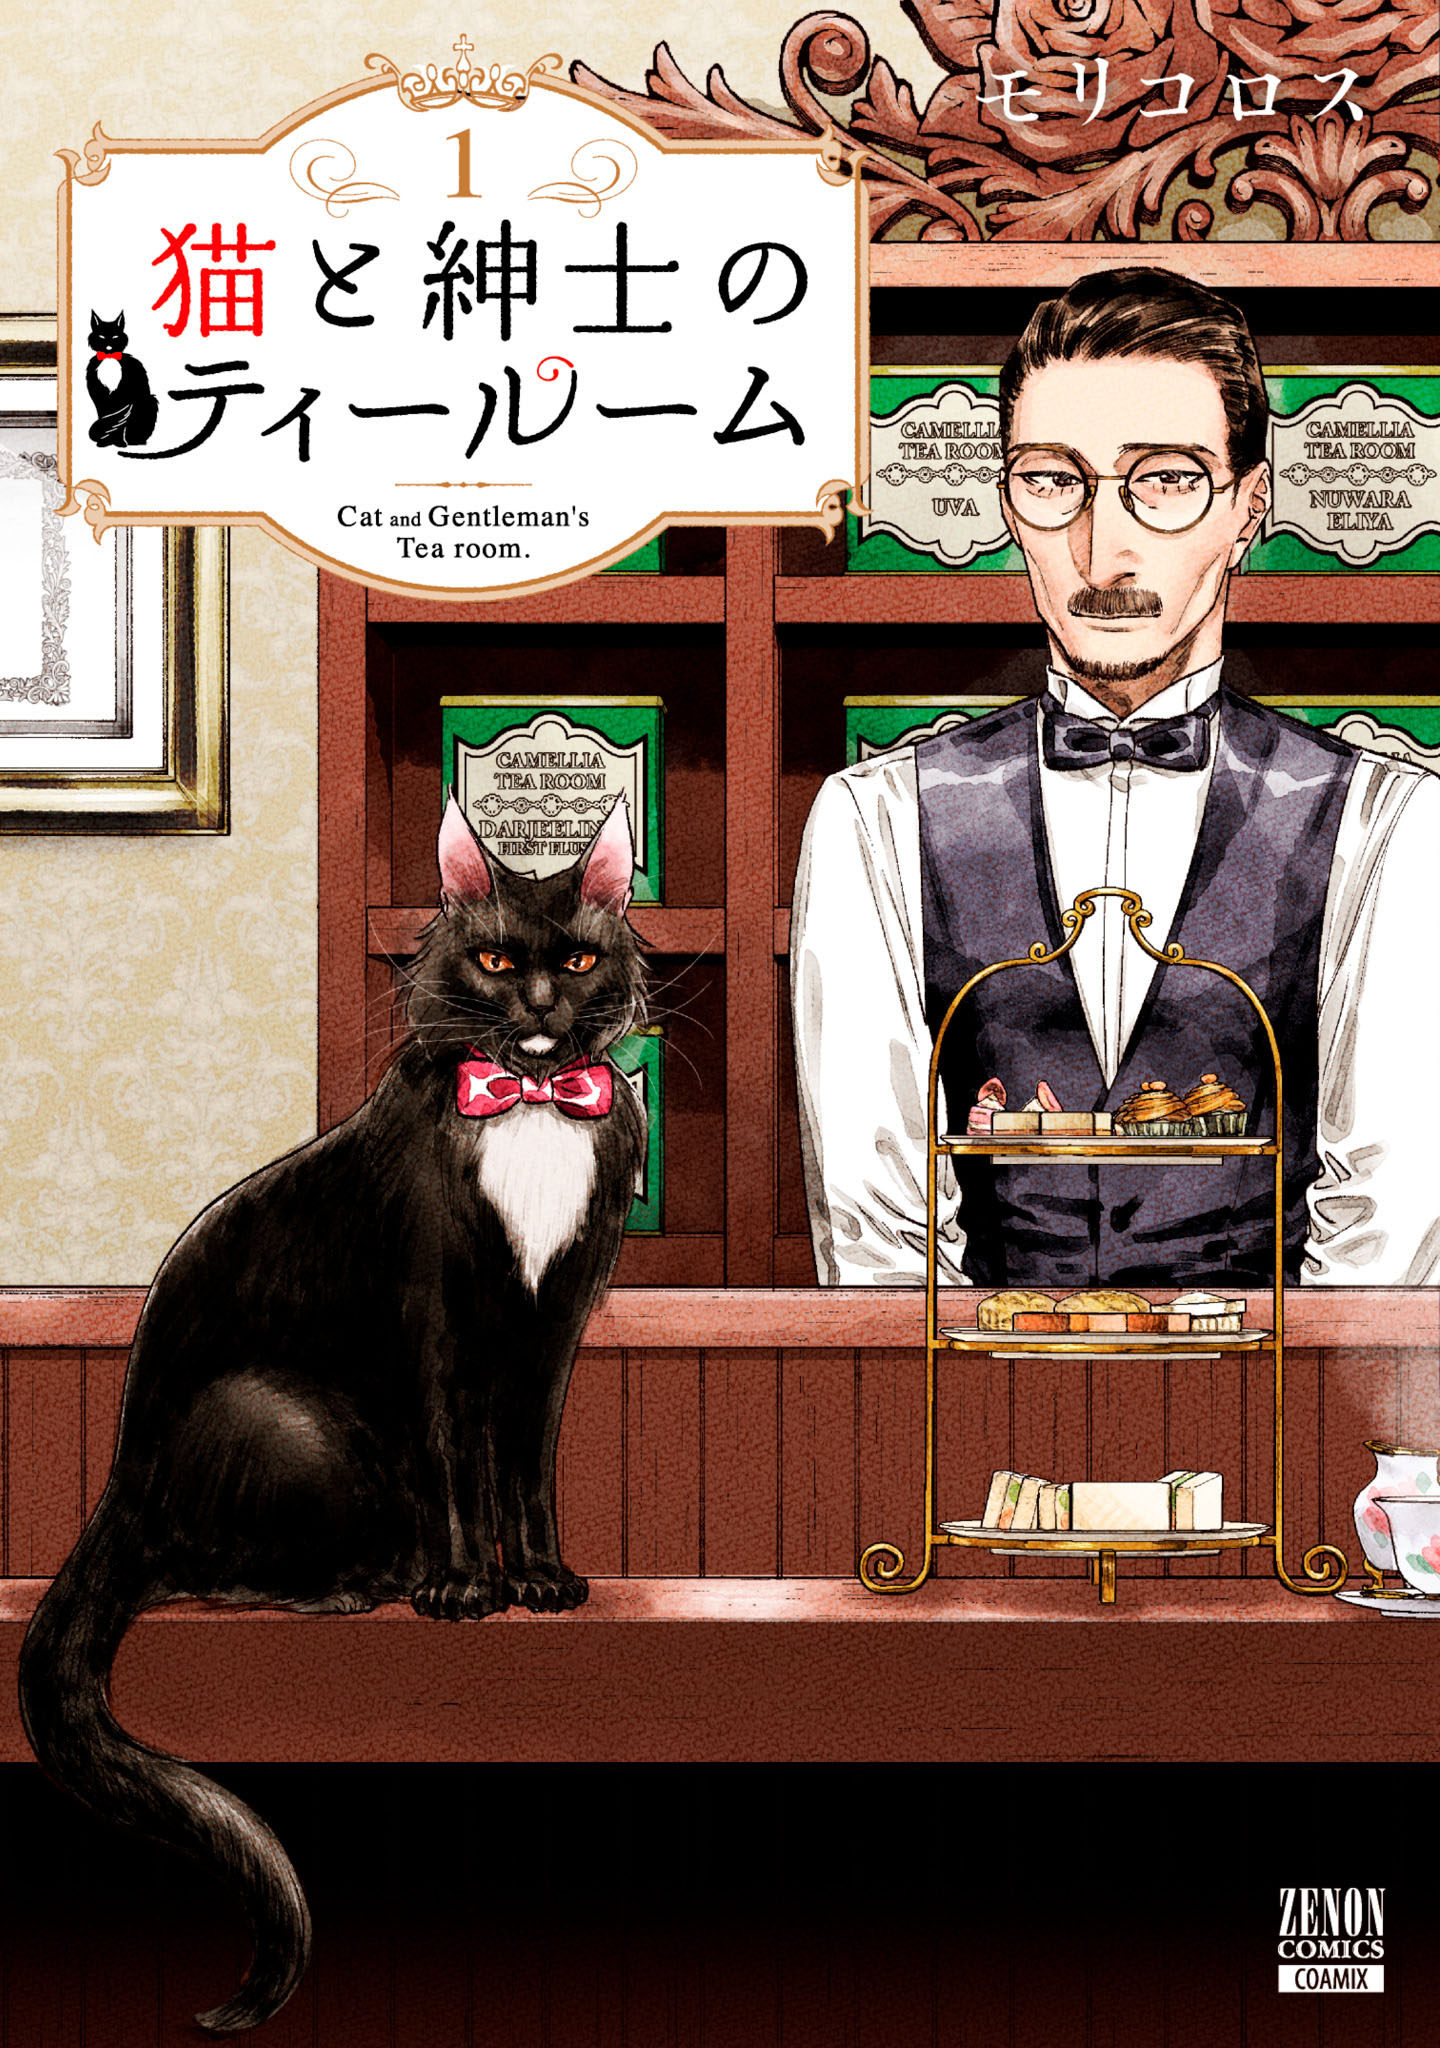 猫と紳士のティールーム 1巻【特典イラスト付き】 - モリコロス - 漫画